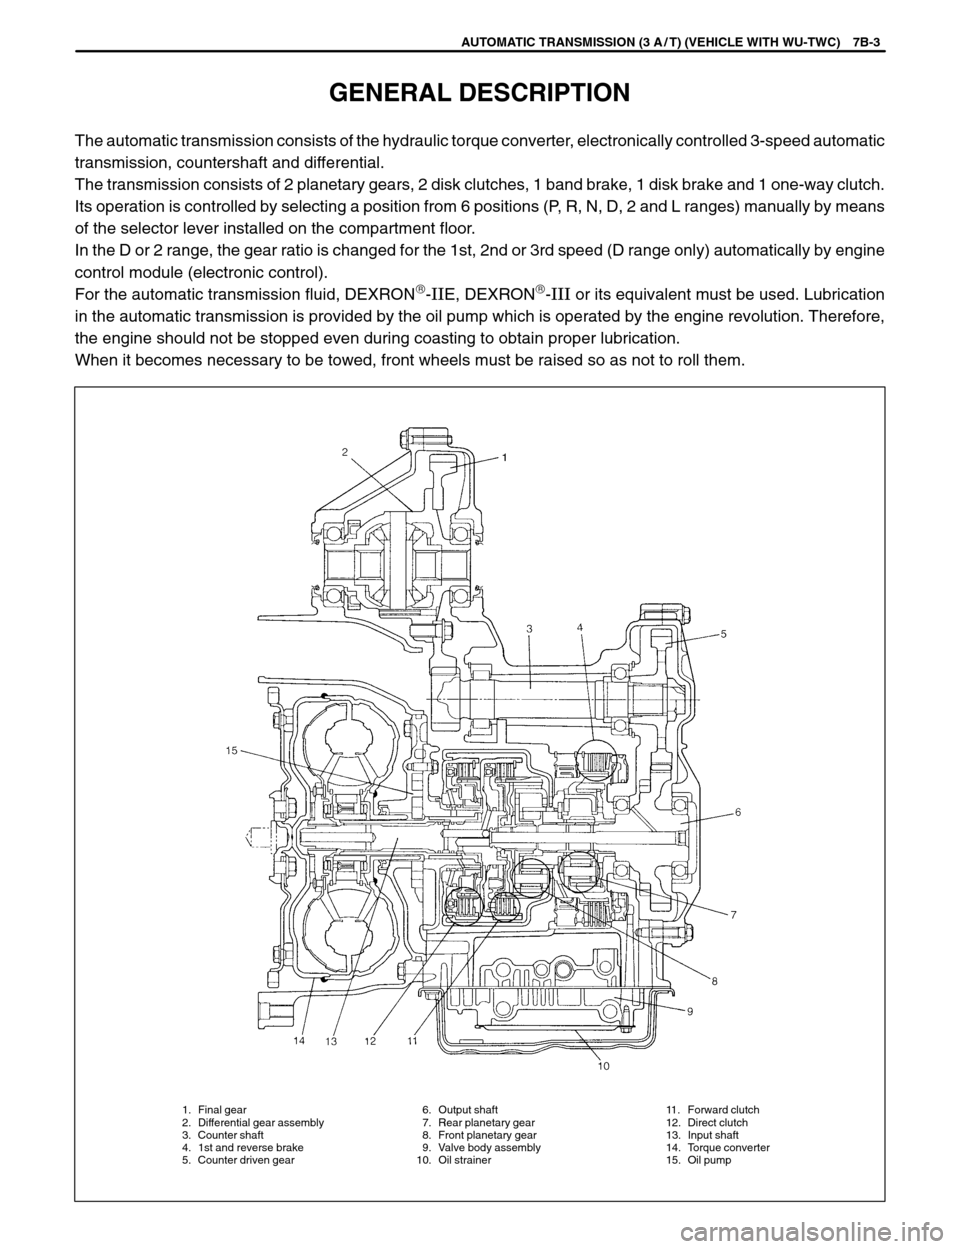 SUZUKI SWIFT 2000 1.G SF310 Service Workshop Manual 1. Final gear
2. Differential gear assembly
3. Counter shaft
4. 1st and reverse brake
5. Counter driven gear11. Forward clutch
12. Direct clutch
13. Input shaft
14. Torque converter
15. Oil pump 6. Ou